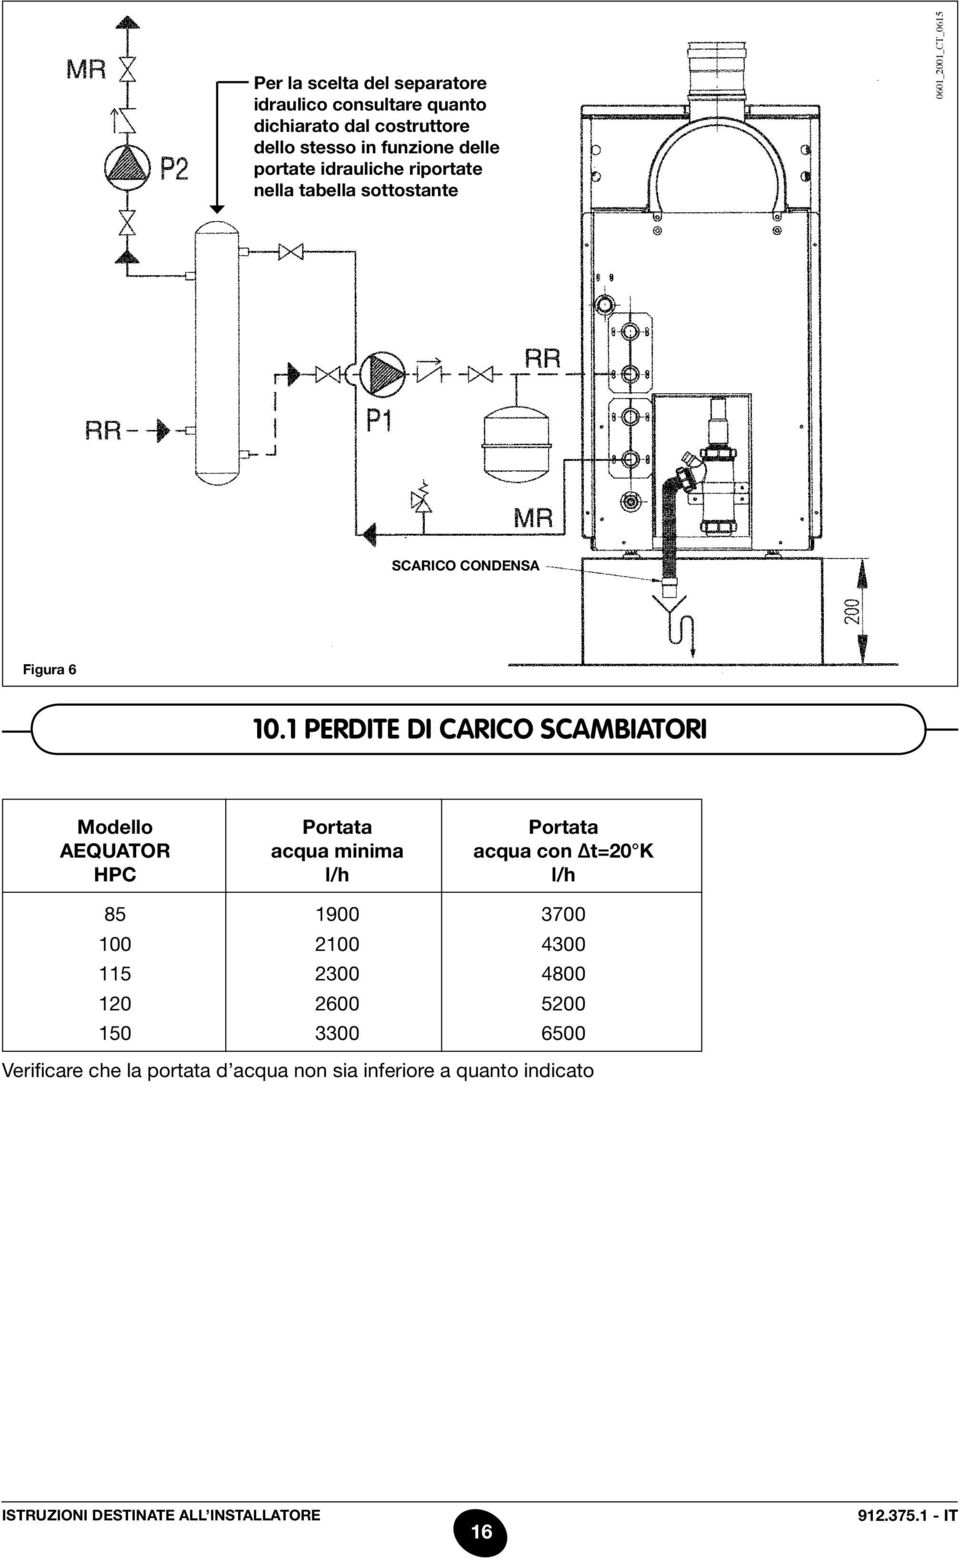 1 perdite di carico scambiatori Modello Portata Portata aequator acqua minima acqua con t=20 K hpc l/h l/h 85 1900